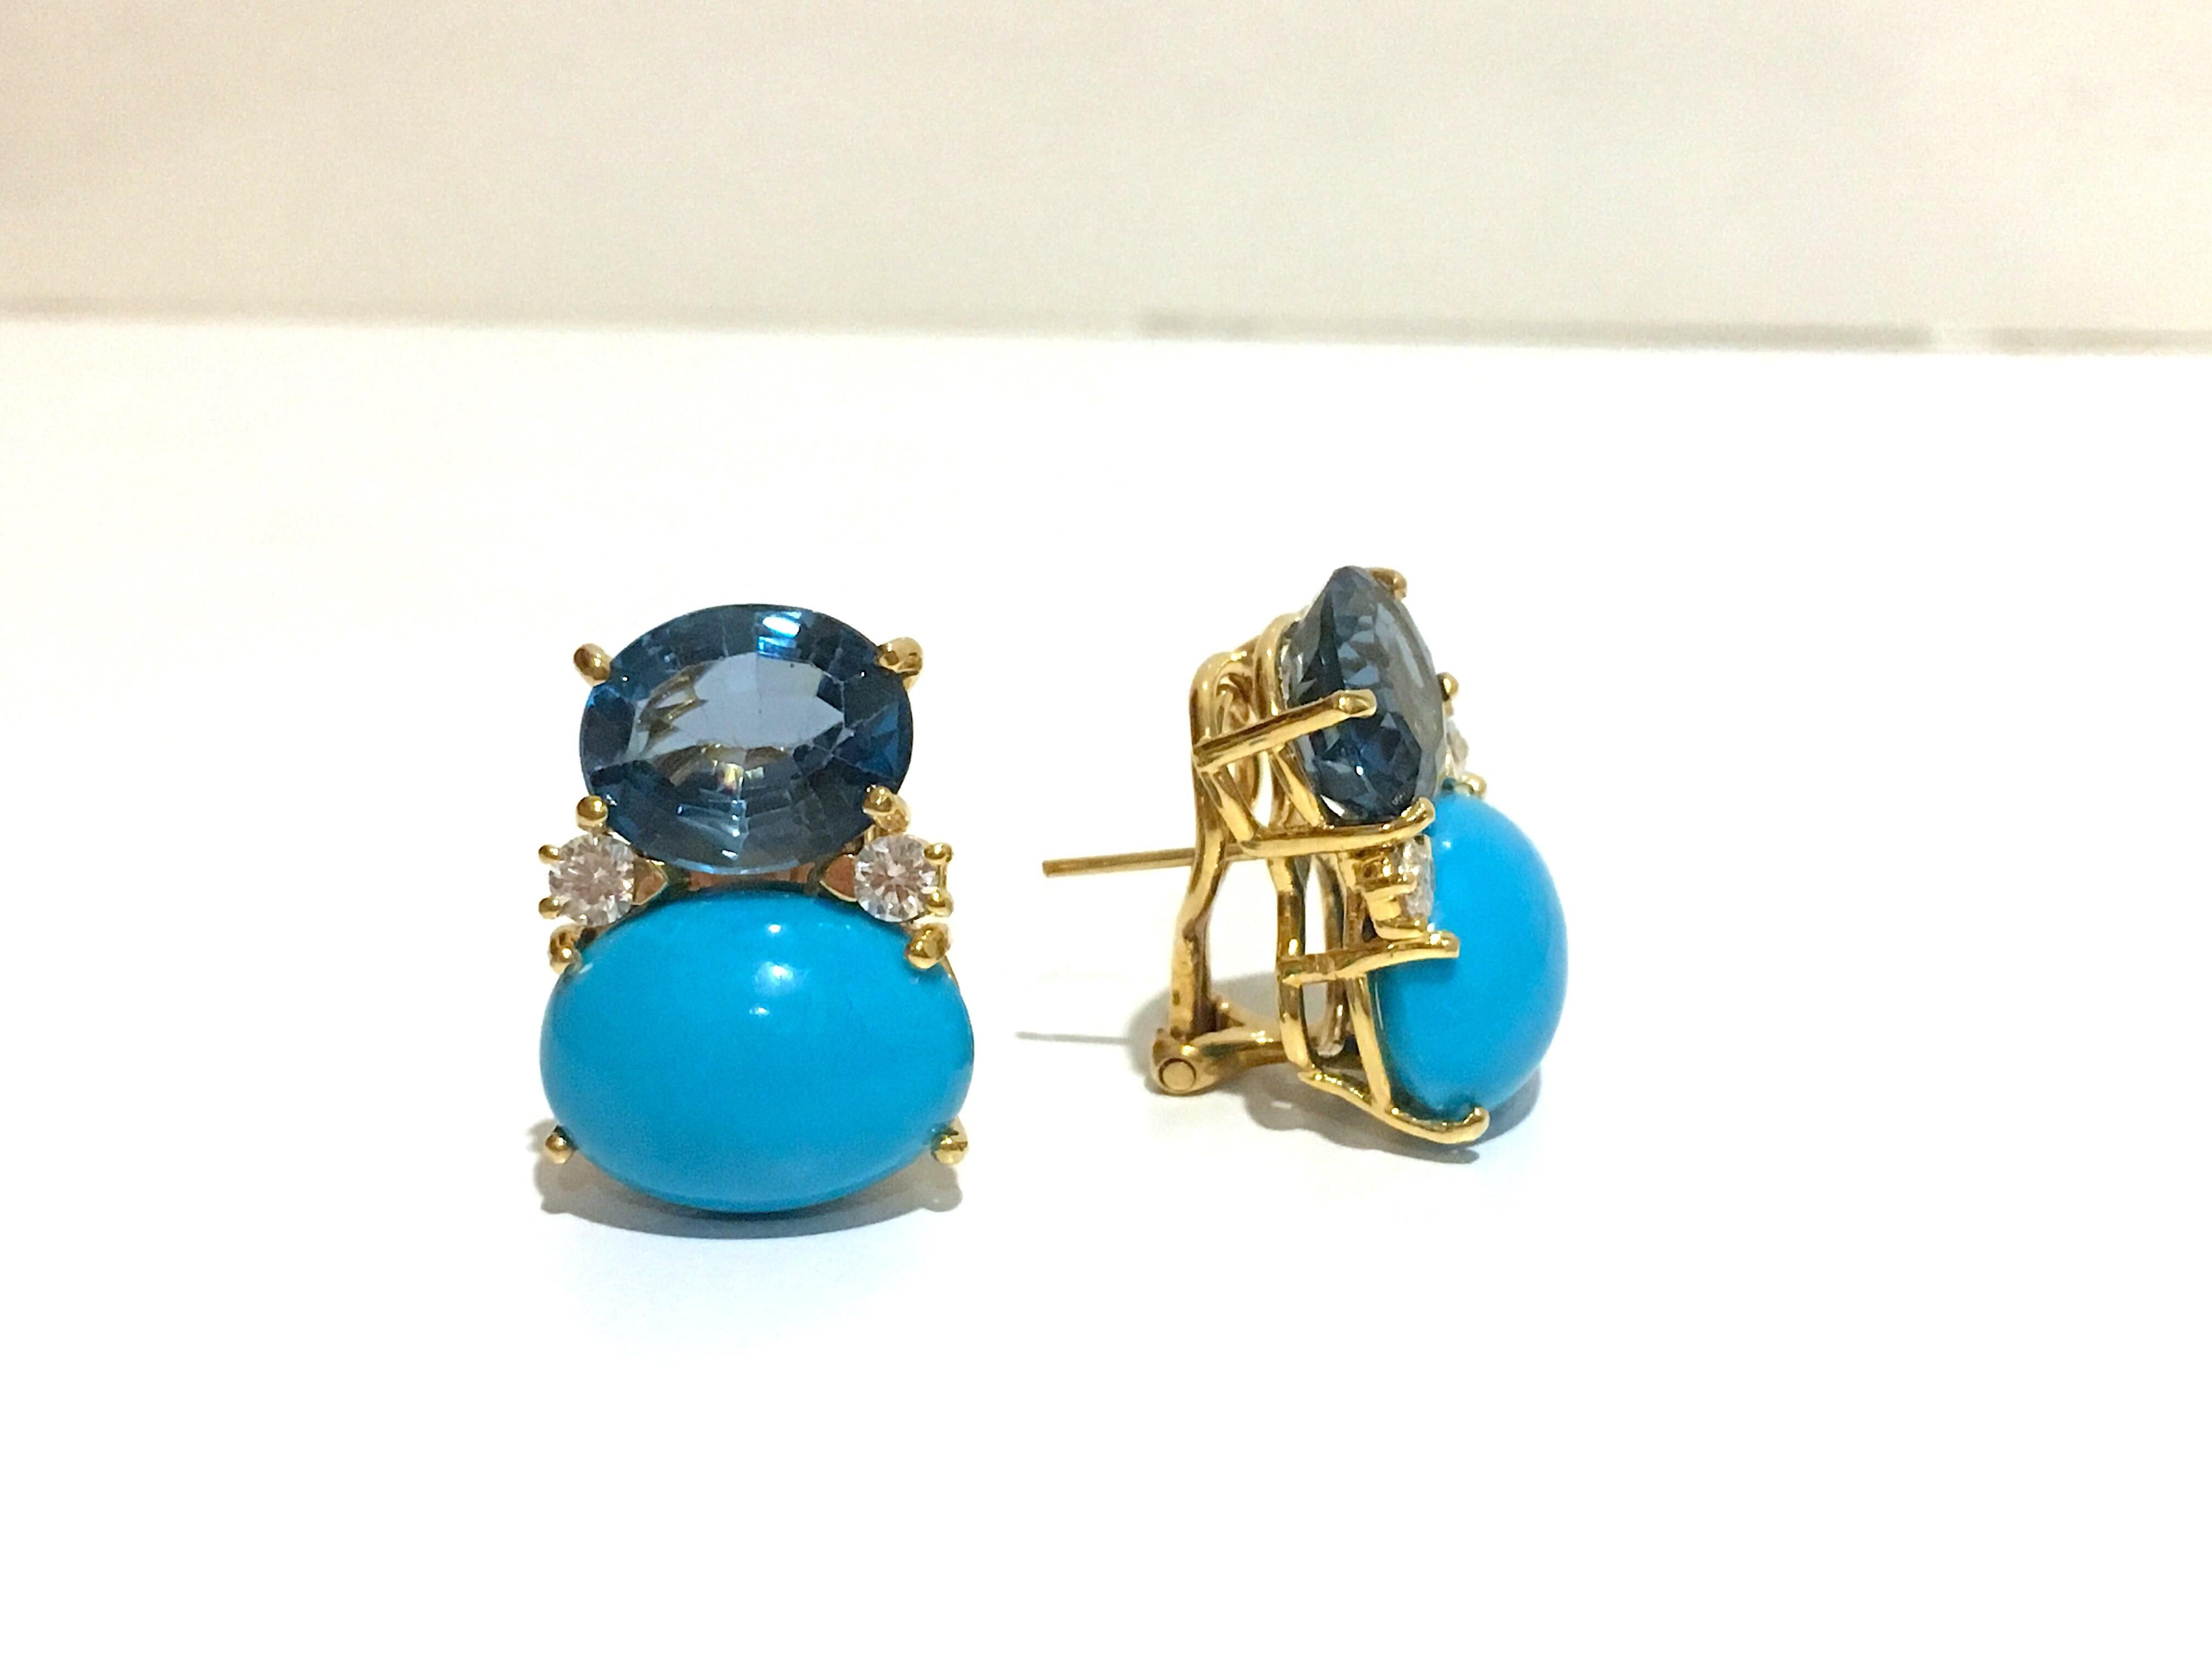 Boucles d'oreilles GUM DROP™ en or jaune 18kt avec topaze bleue, turquoise et diamants. 
 
Clip ou percé

La topaze bleue pèse environ 5 cts chacune et la turquoise environ 12 cts chacune, ainsi que 4 diamants pesant environ 0,60 ct.

Les boucles